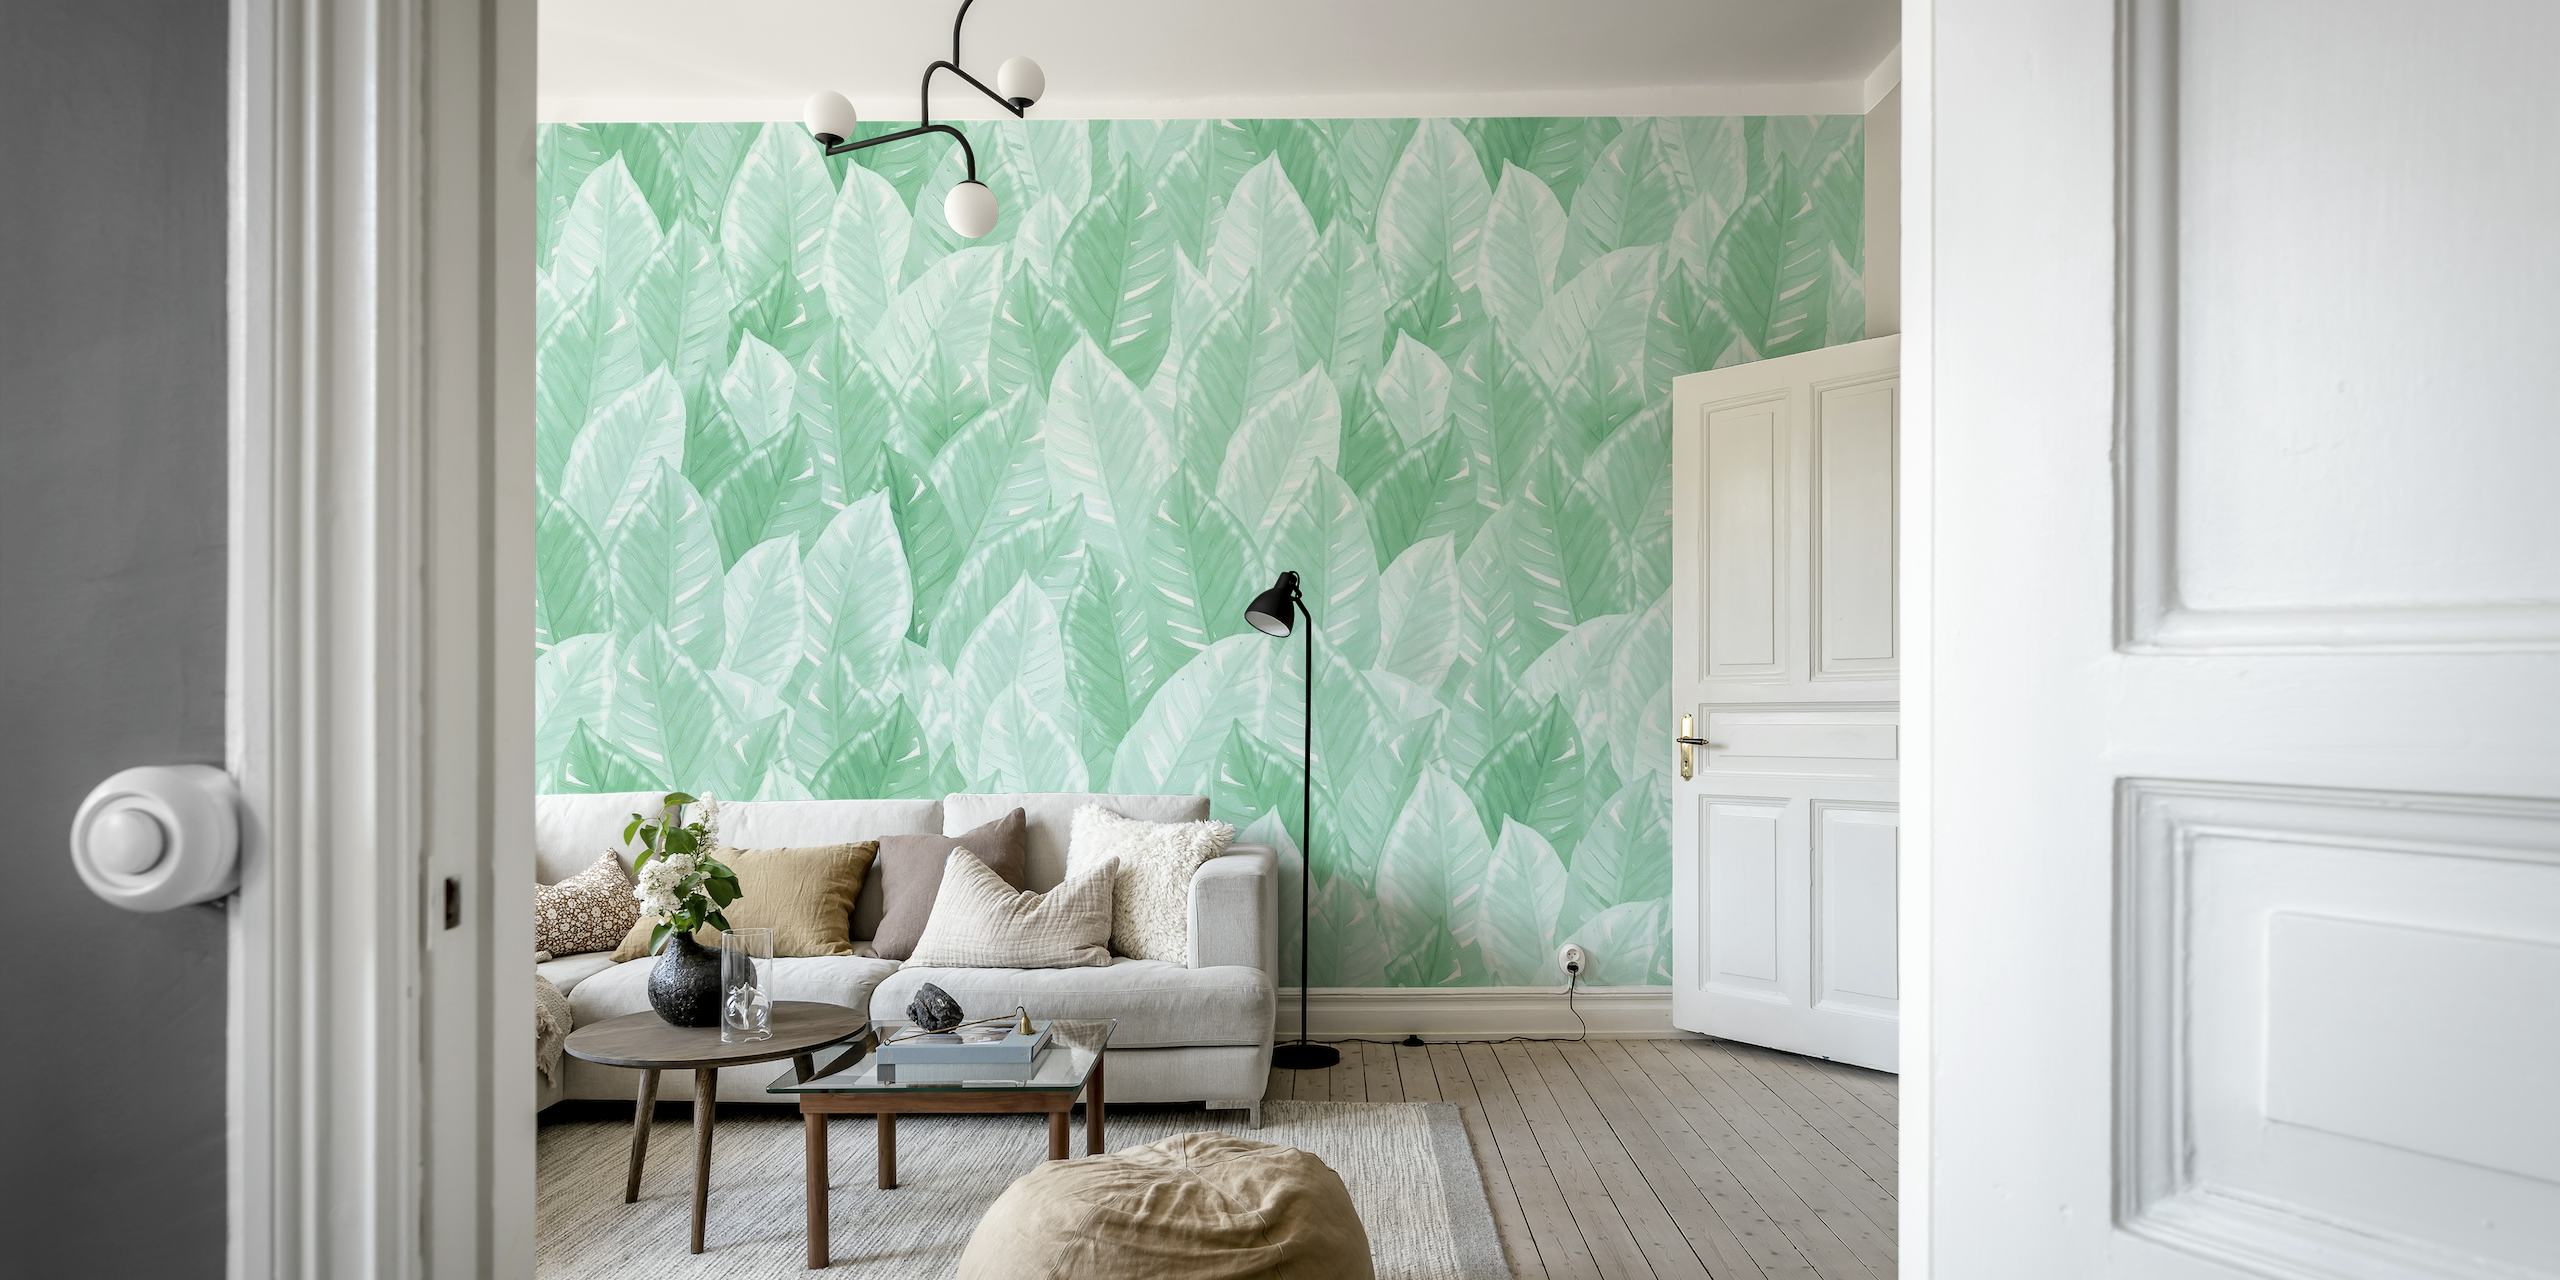 Aquarel groene bladeren muurschildering voor interieurdecoratie